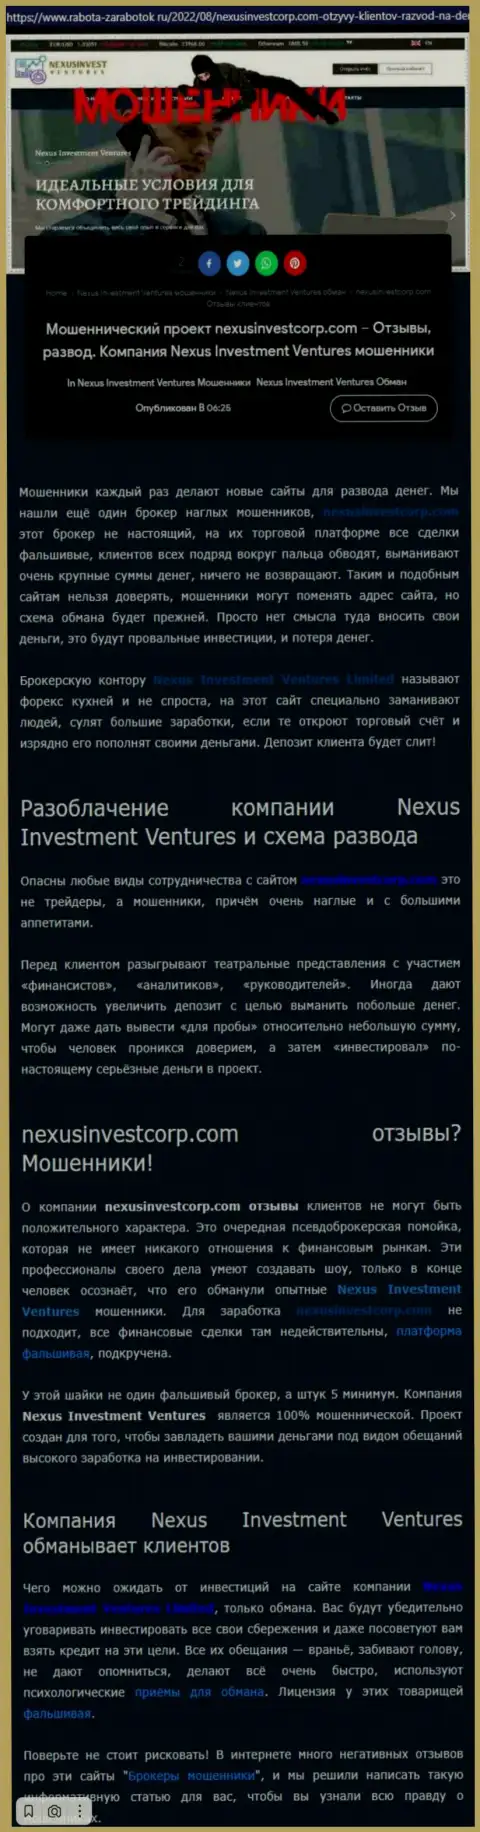 Если же не желаете оказаться еще одной жертвой Nexus Investment Ventures Limited, бегите от них как можно дальше (обзор противозаконных деяний)